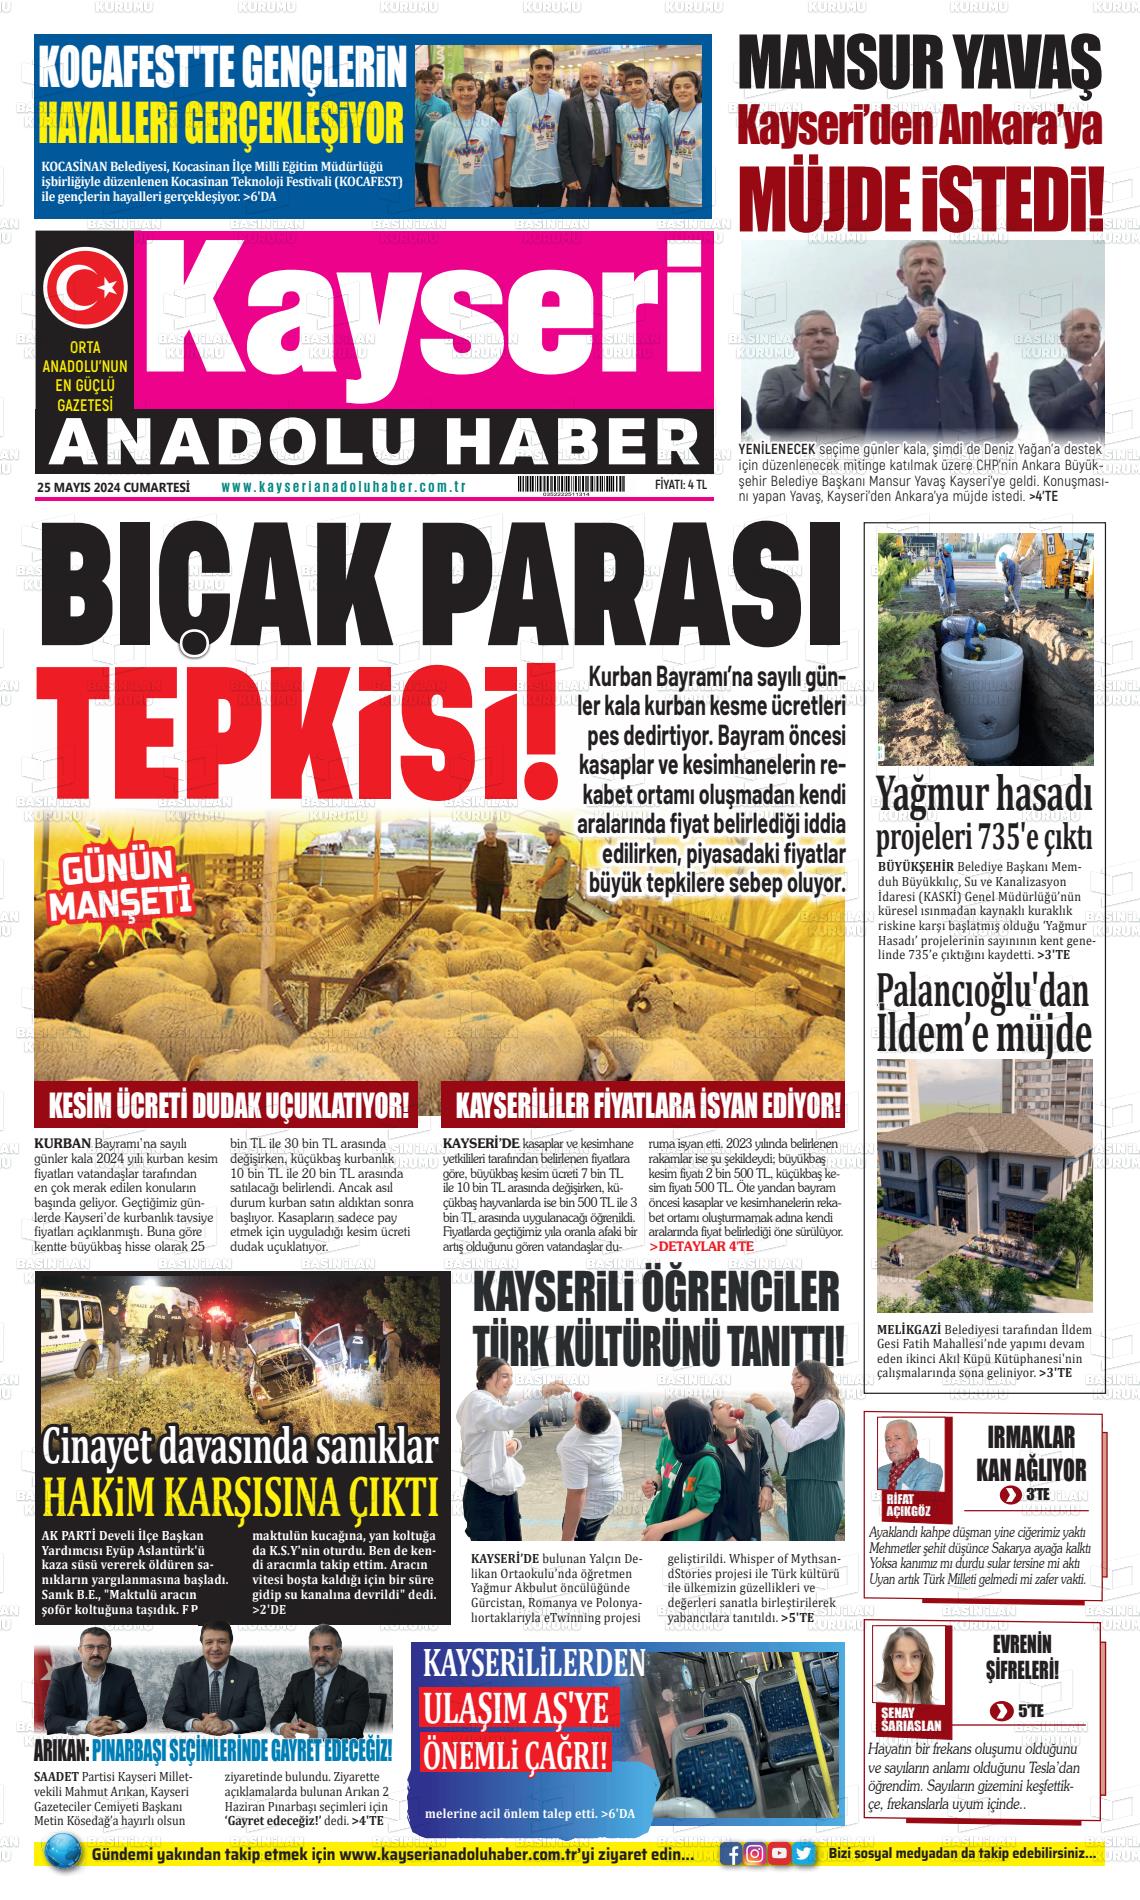 KAYSERİ ANADOLU HABER Gazetesi